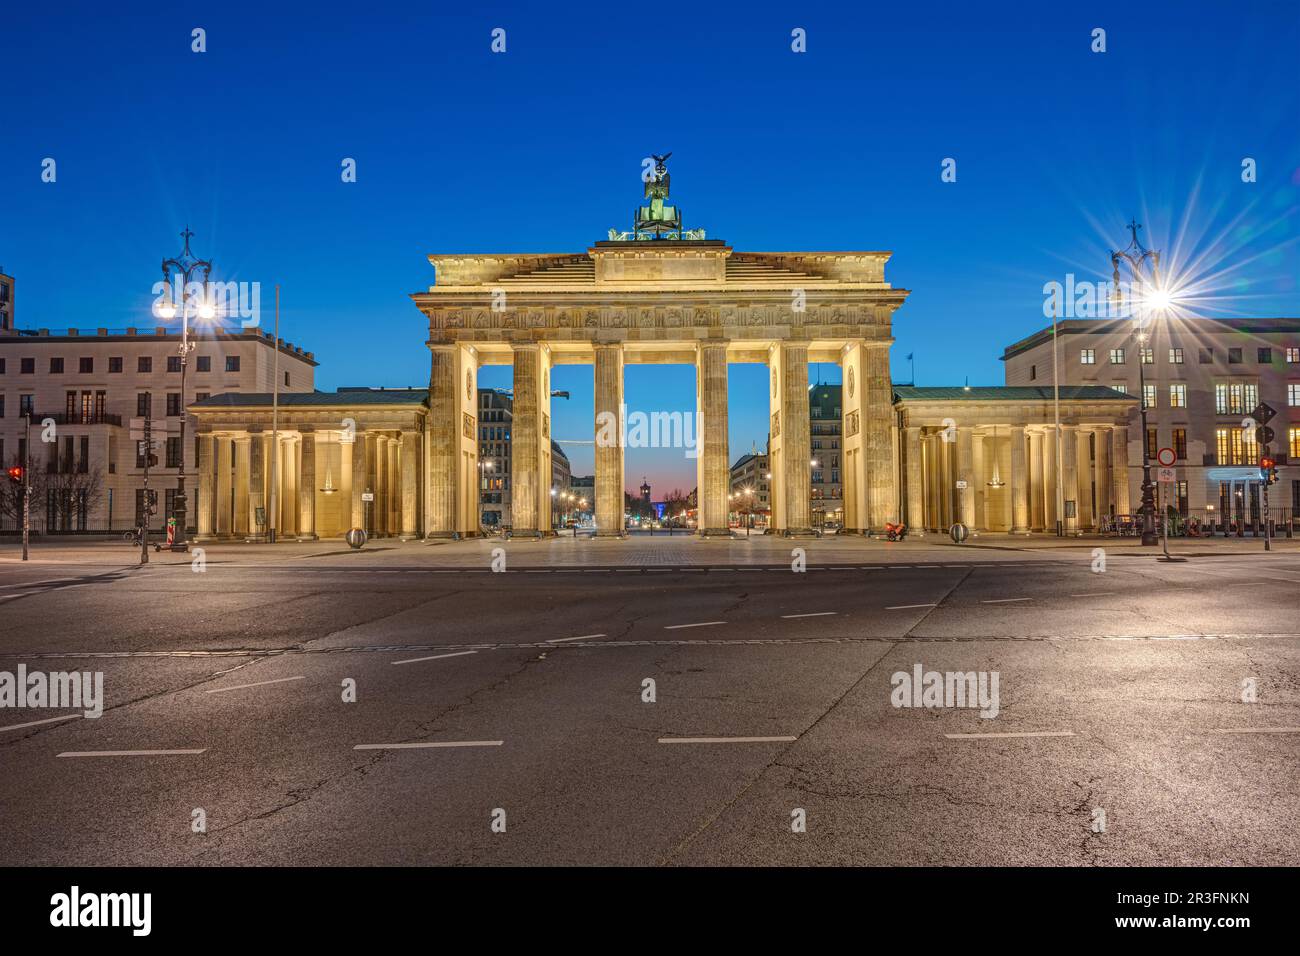 Das berühmte Brandenburger Tor in Berlin bei Nacht von der Rückseite aus gesehen Stockfoto